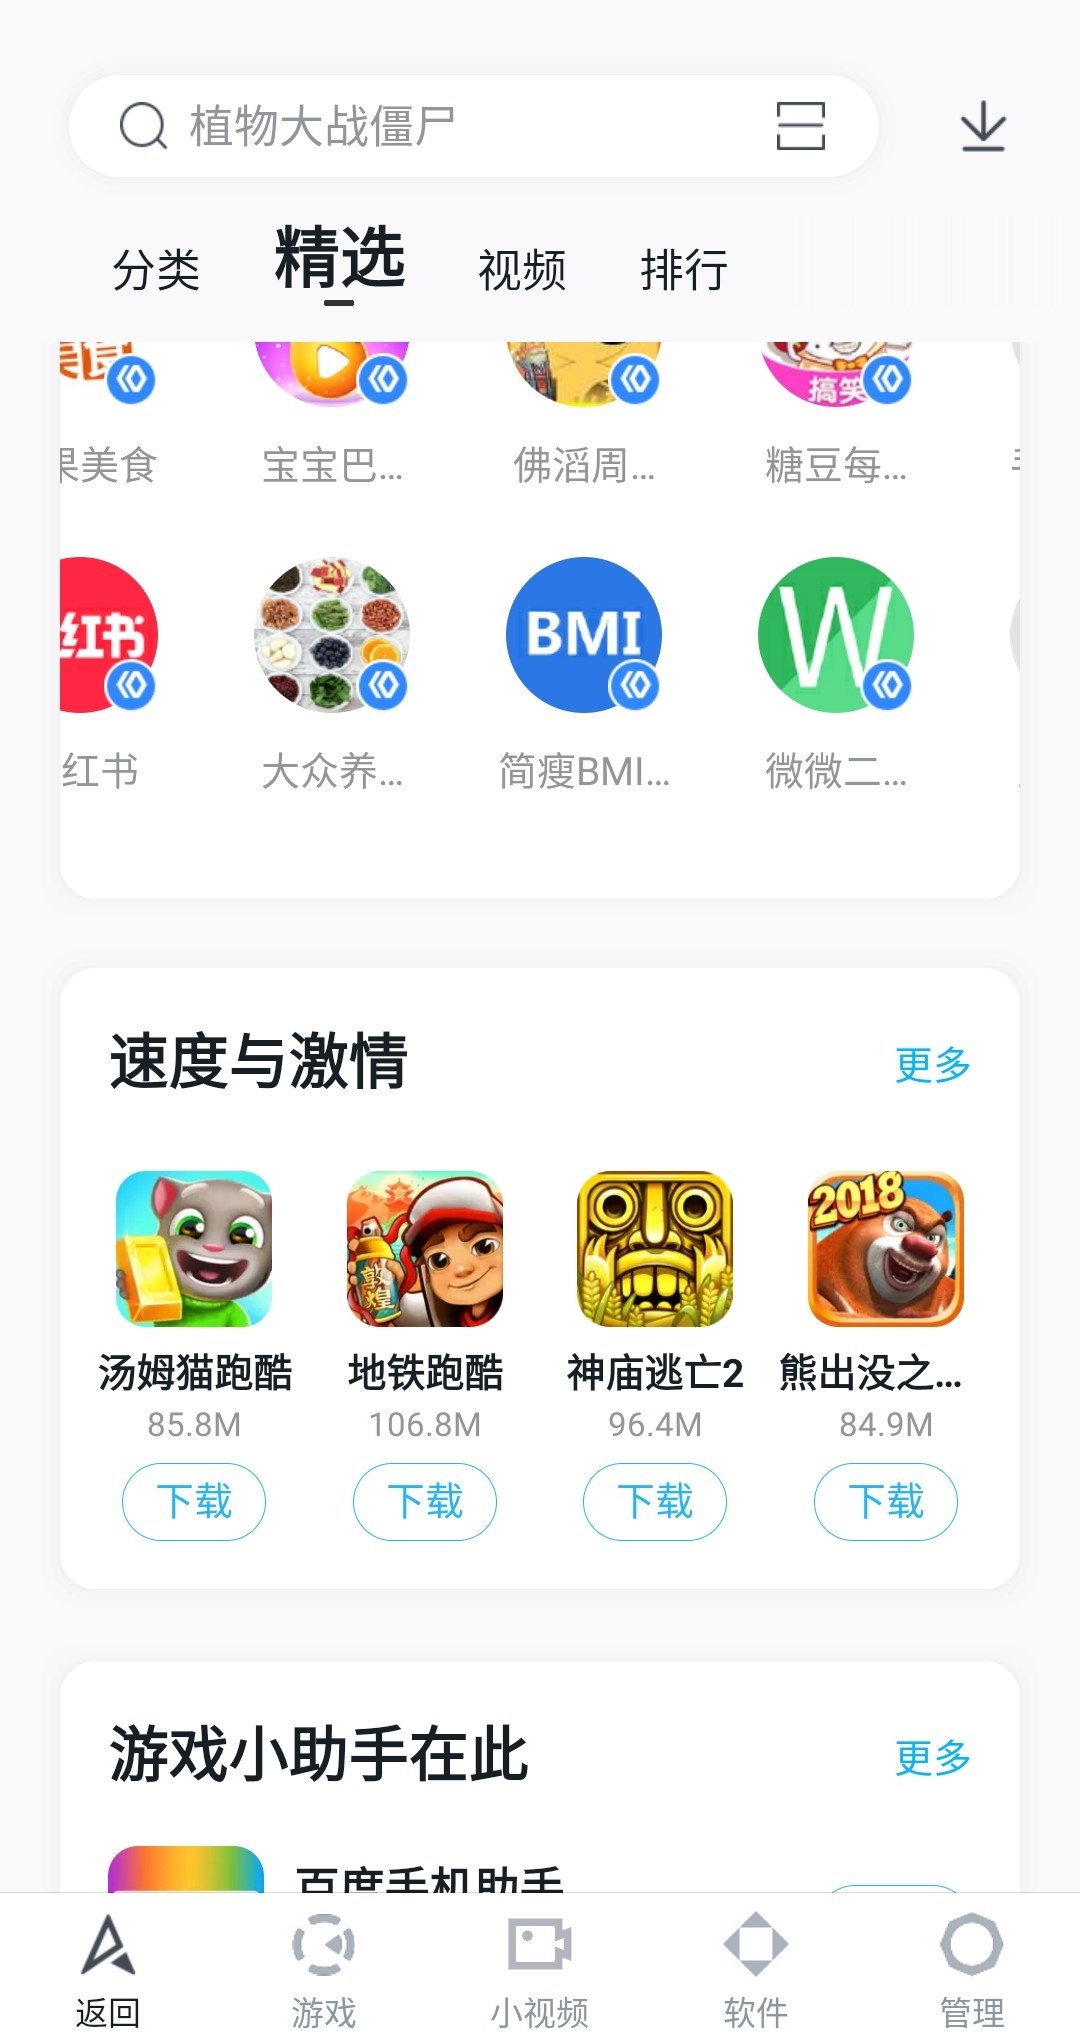 Baidu apk. Baidu приложение. Приложение китайских товаров. Китайские приложения для компьютера. Китайское приложение одежды.